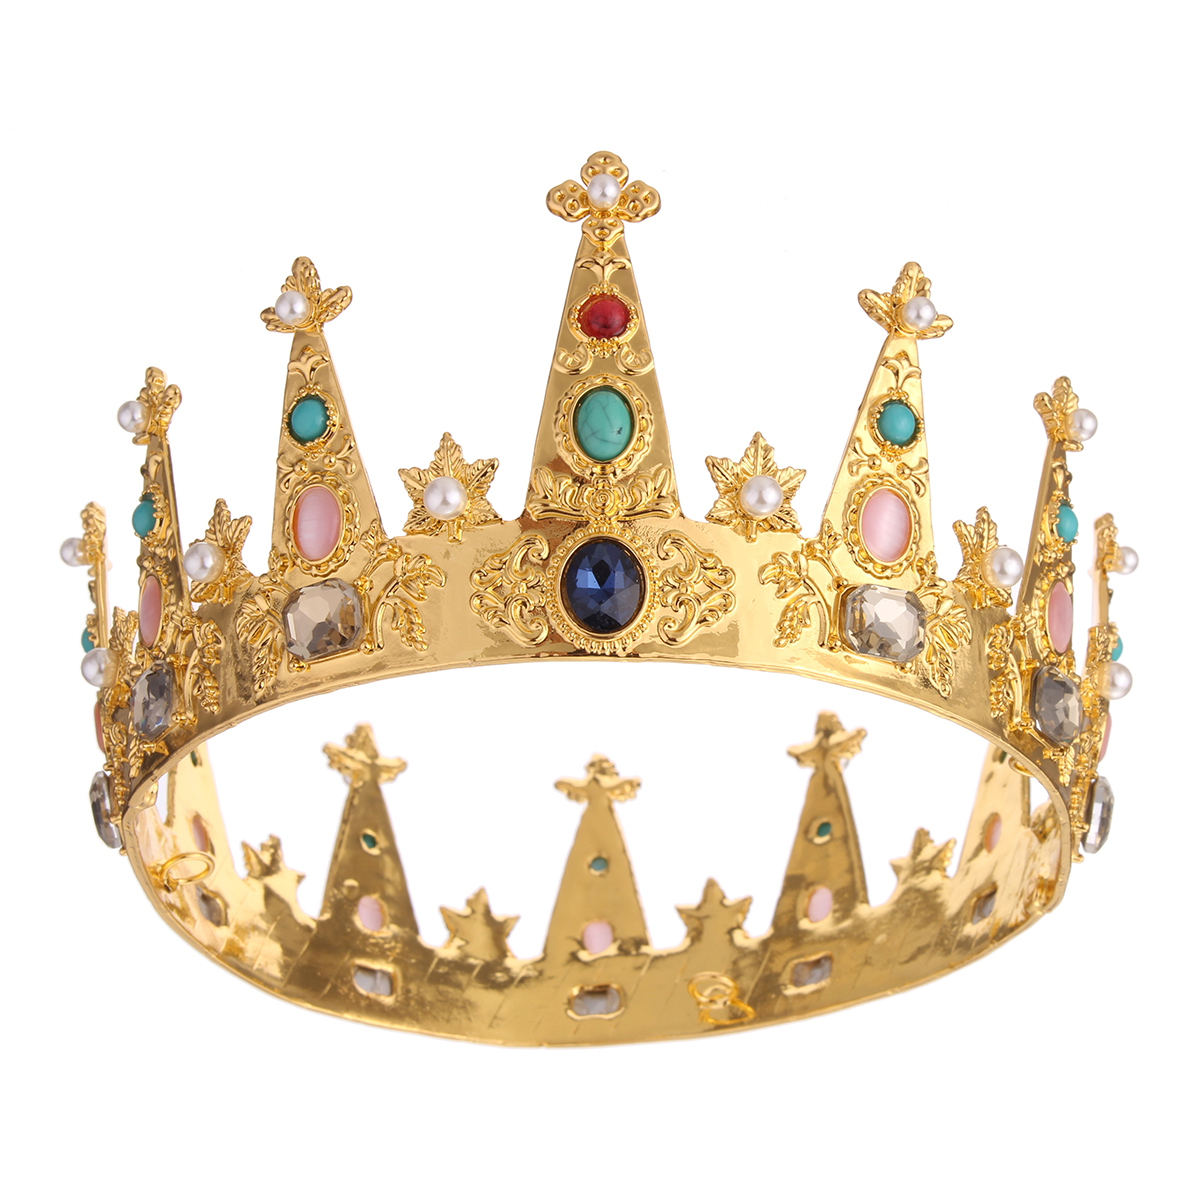 

Невеста алмаз игристое кристалл горный хрусталь корону золотой король королева тиару свадьба головной убор